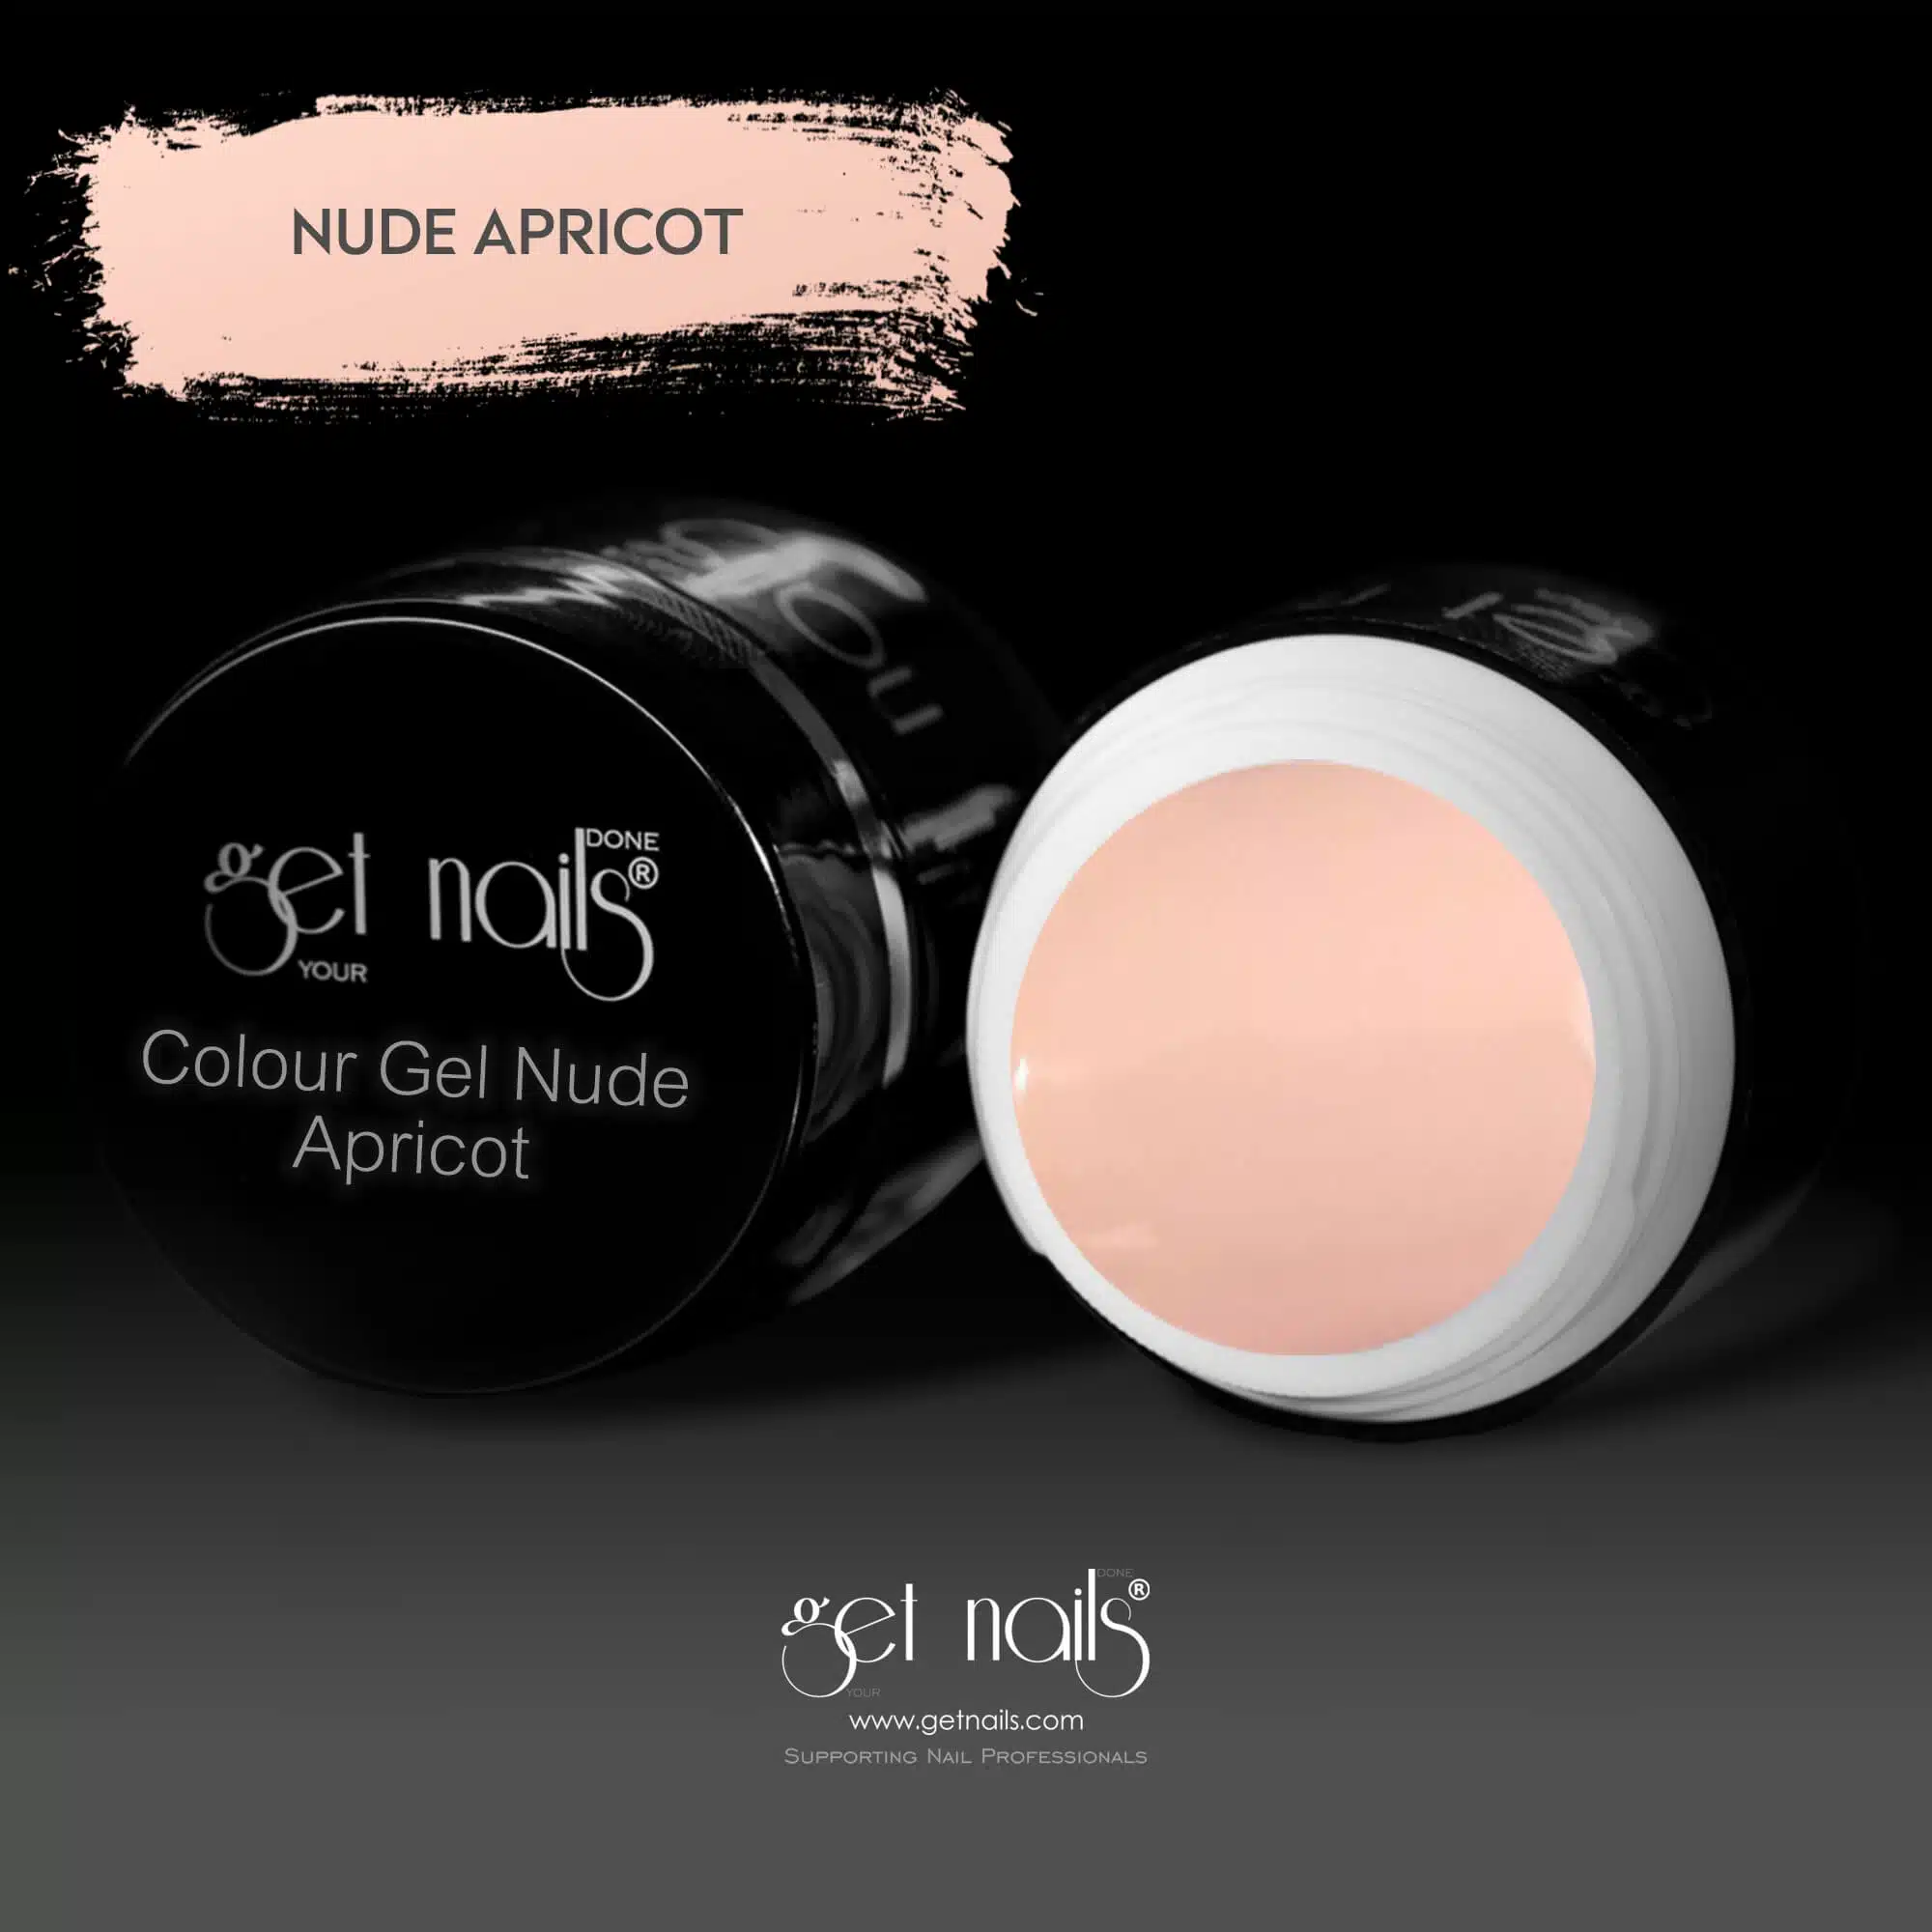 Get Nails Austria - Colour Gel Nude Apricot 5g